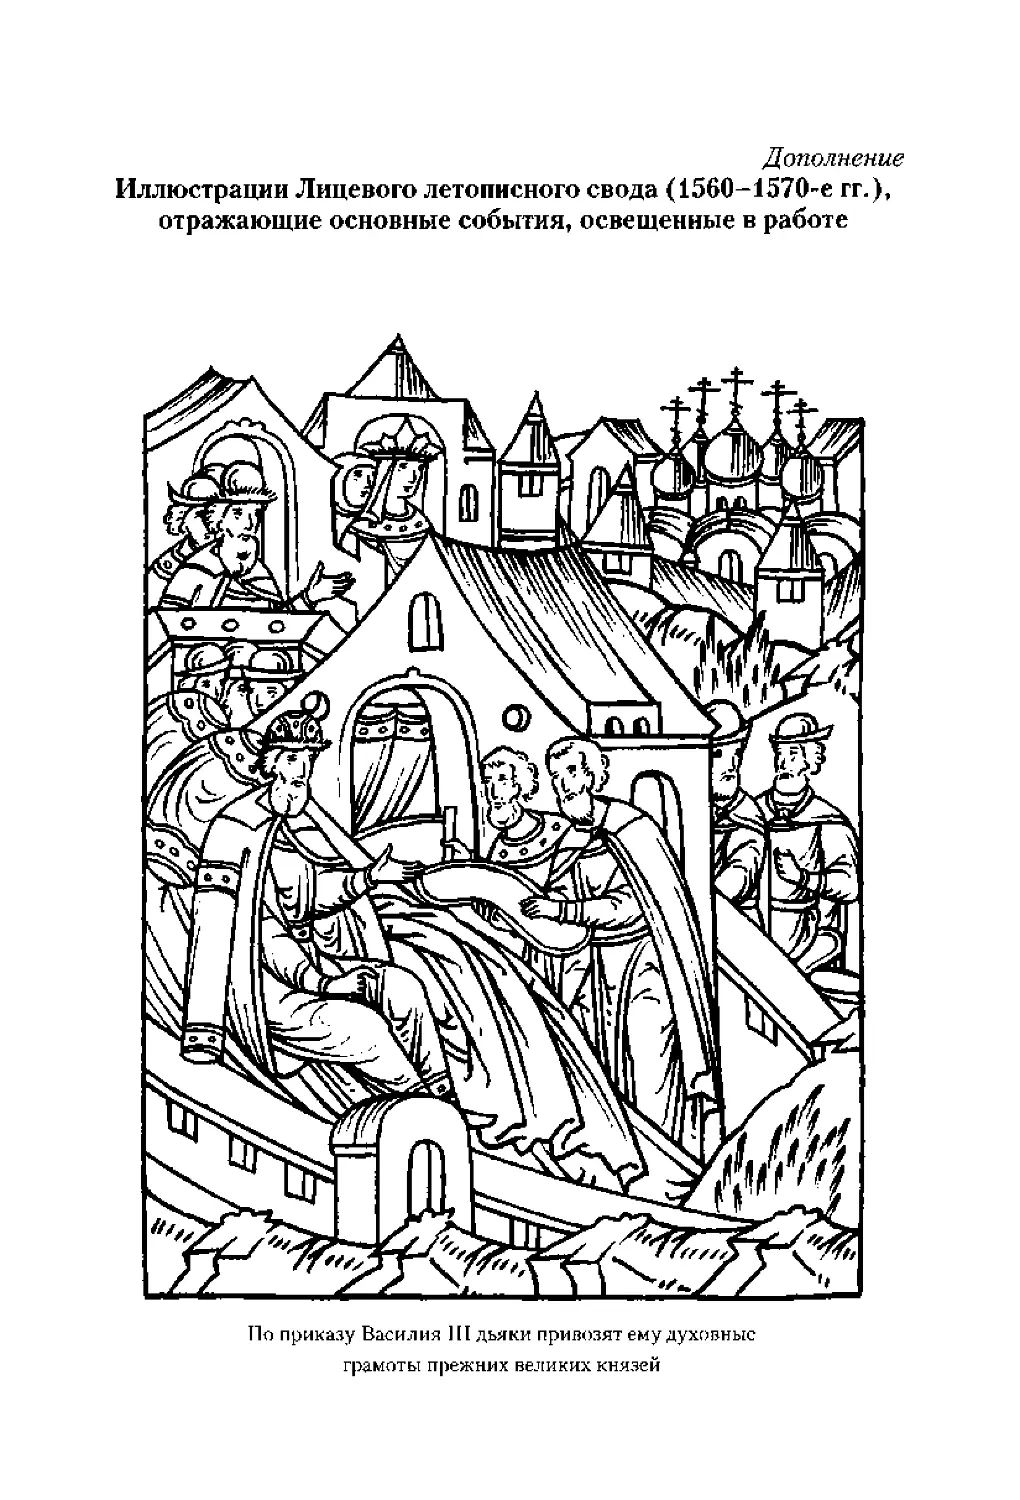 ﻿Дополнение øиллюстрации Лицевого летописного свода ø1560-1570-е гг.ù